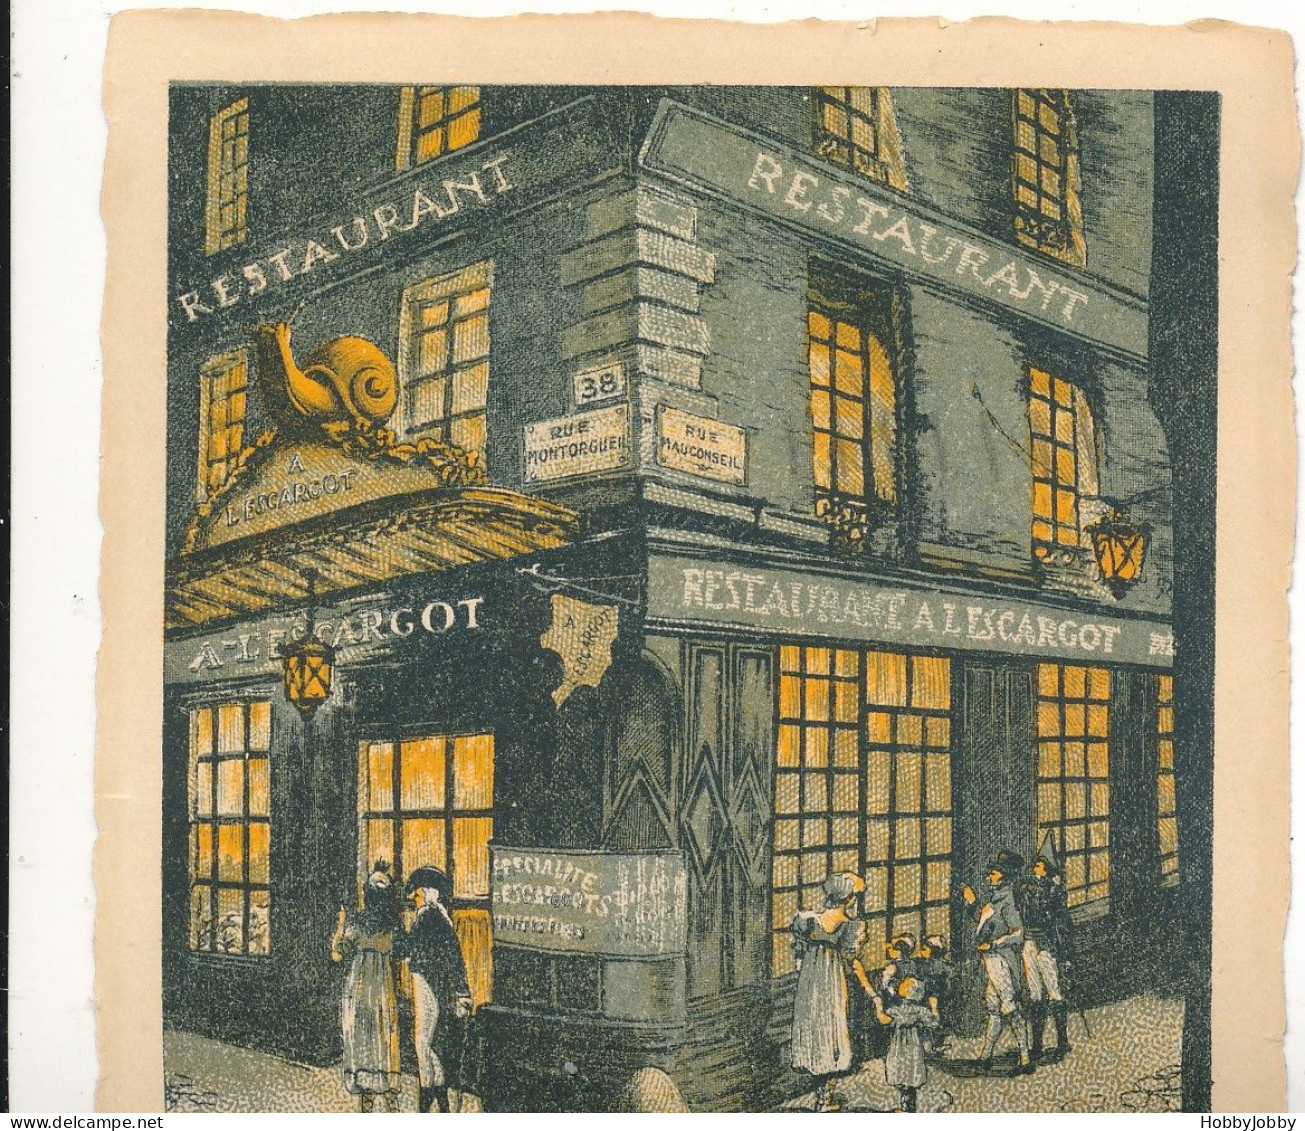 L'e ESCARGOT - Restaurant P 58, Rue Montorgueil- Paris  + Sizi By Ann Rusnak Tirage Limite: 79/ 150 Ex. - Petits Métiers à Paris